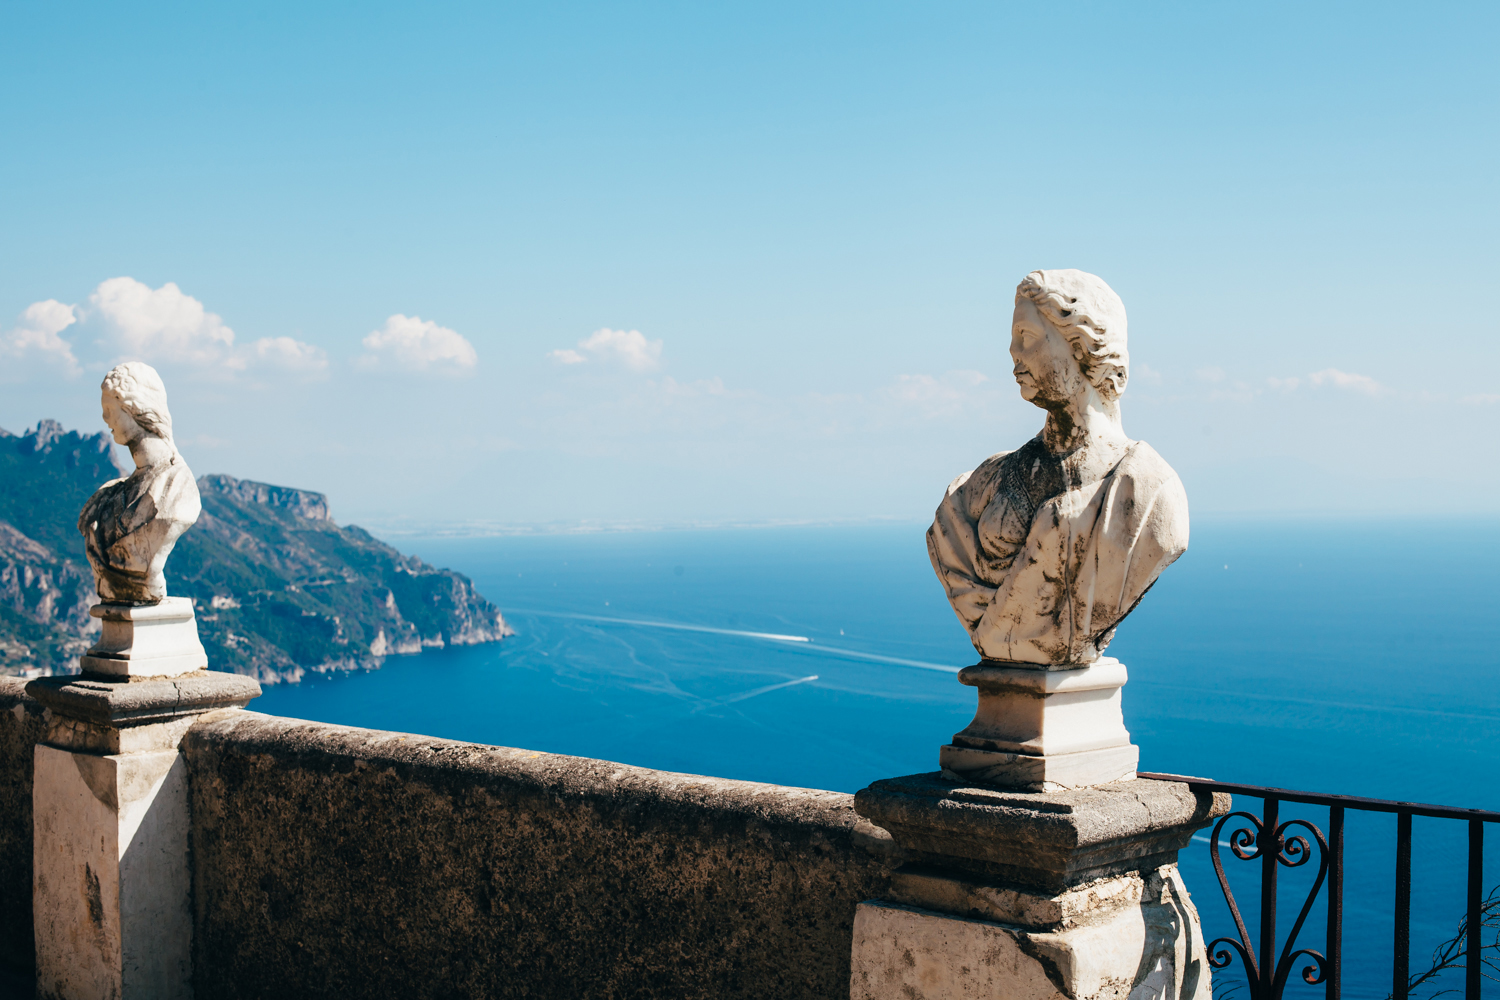 Travel Notes: Italy (Rome and the Amalfi Coast) - Golubka Kitchen